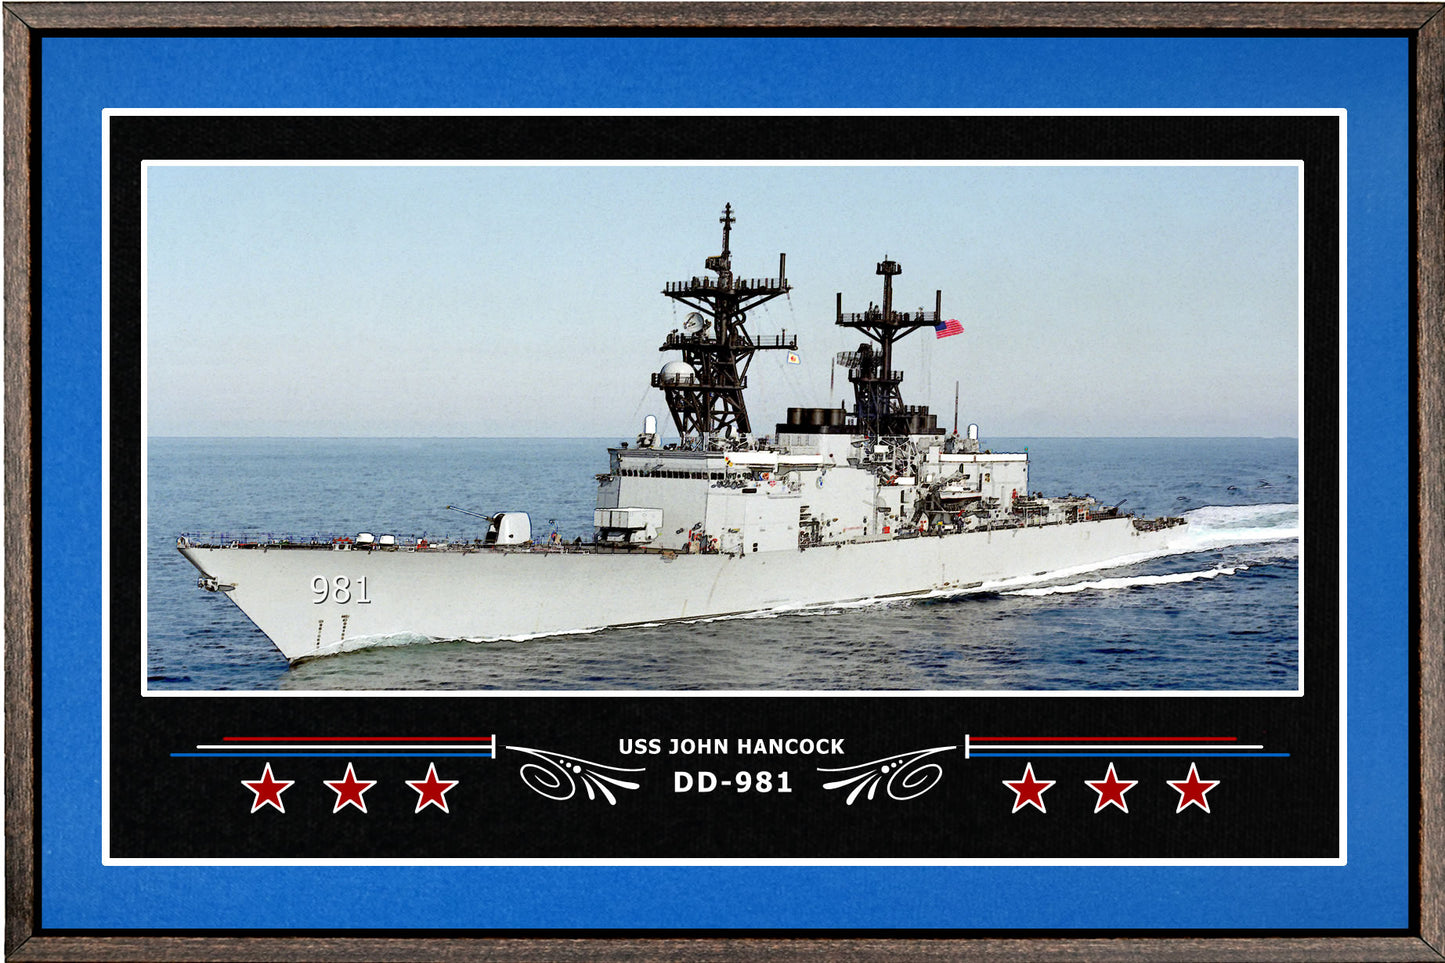 USS JOHN HANCOCK DD 981 BOX FRAMED CANVAS ART BLUE